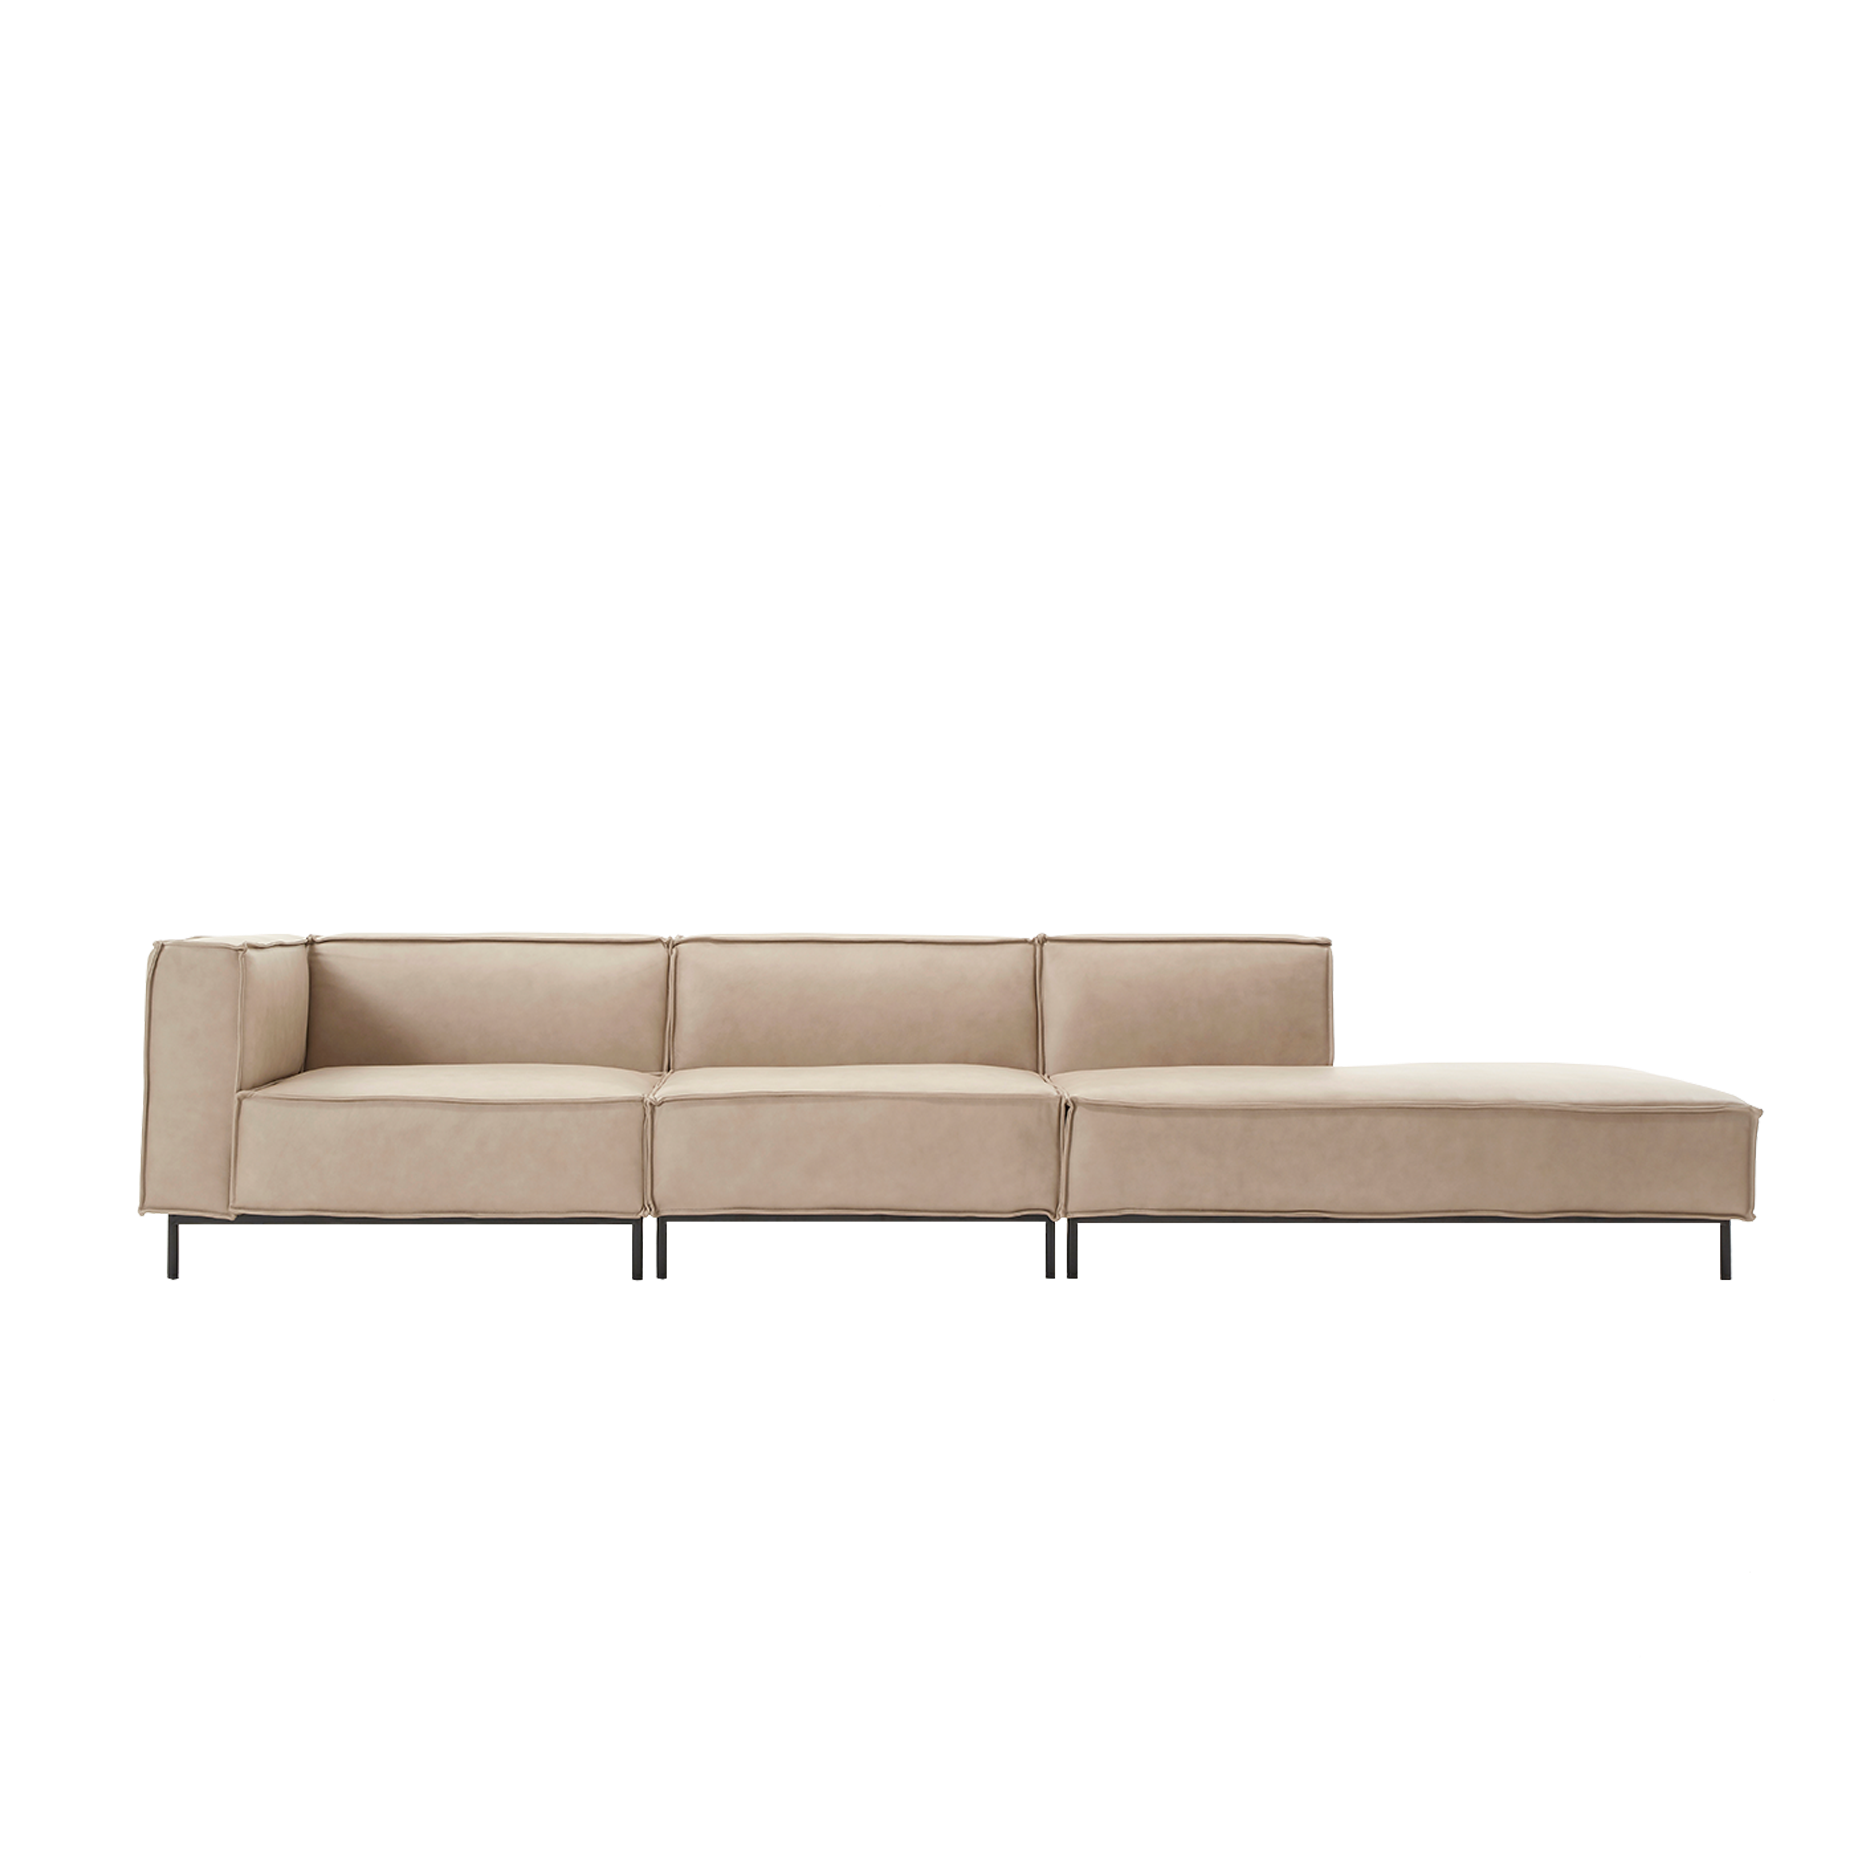 (주)도이치 DOICH ®    PEN20 modular couch sofa 도이치 펜20 3인 카우치 모듈소파  [4주 주문제작]